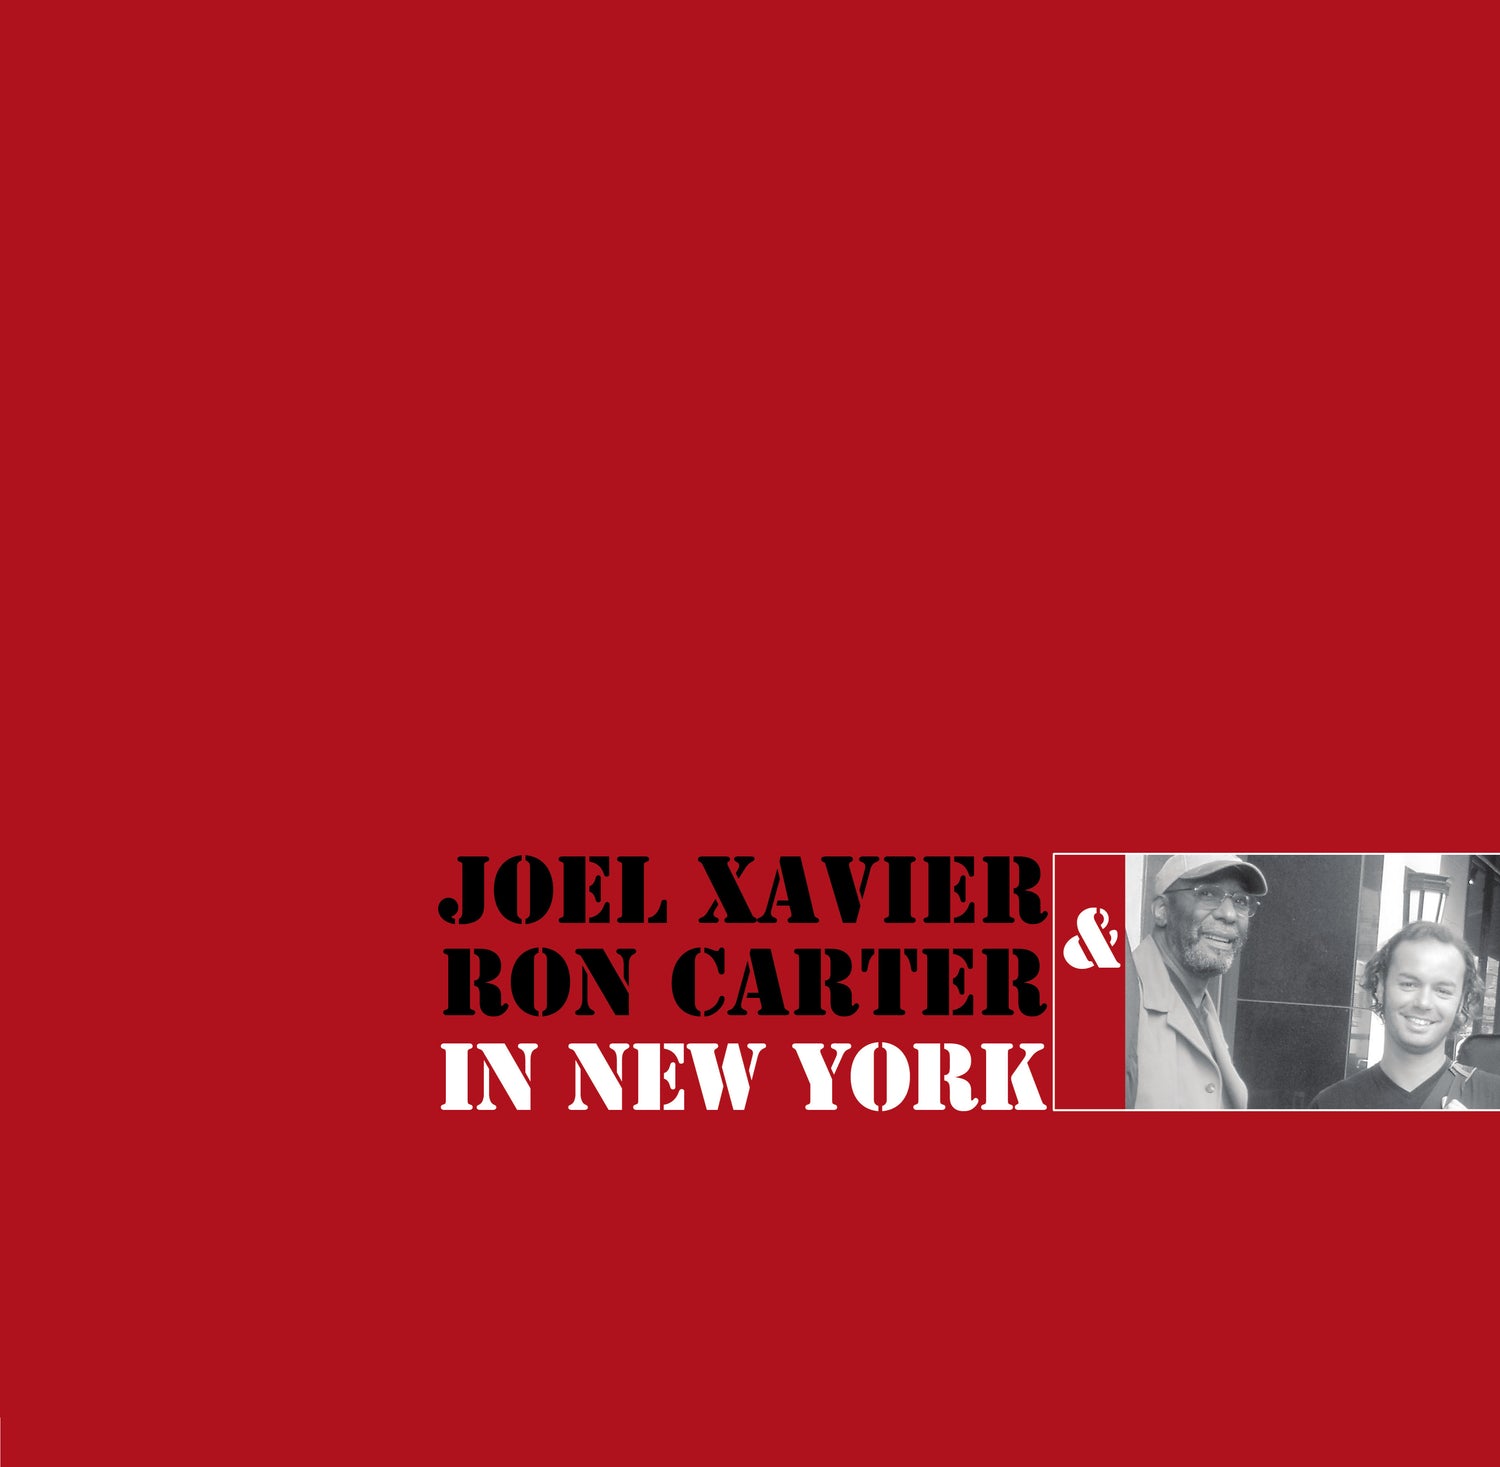 Pochette de : IN NEW YORK (180 GRAMM VINYL) - XAVIER JOEL / CARTER RON (33T)